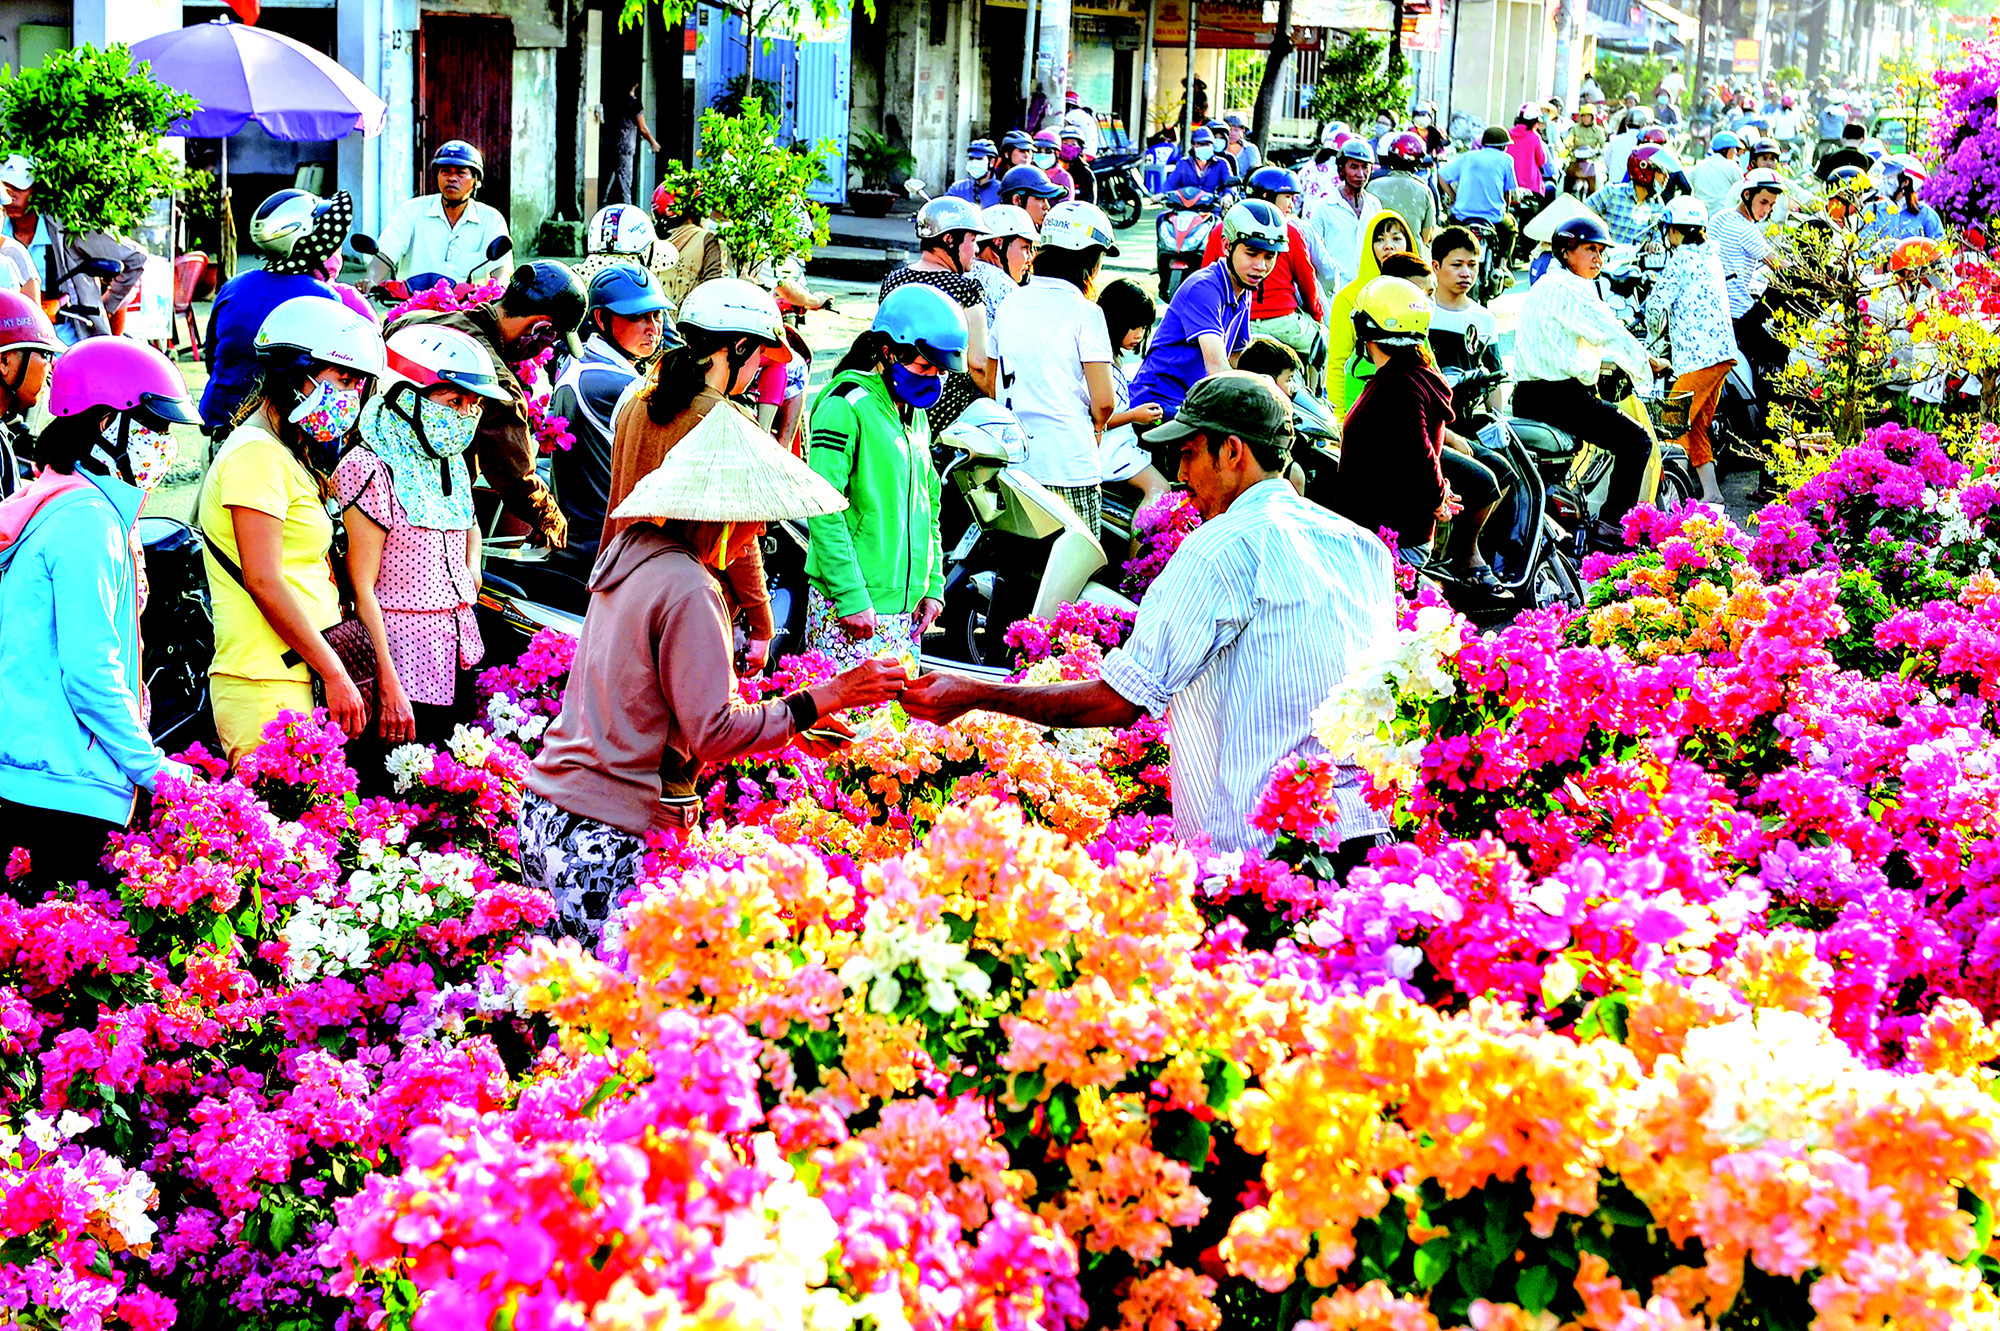 Chợ Tết là nơi tuyệt vời để tìm hiểu về nét văn hóa đậm đà của người Việt. Từ những gian hàng bánh chưng bánh tét, hoa đào, đến những món đồ trang trí Tết, bạn sẽ có cơ hội trải nghiệm Tết đầy đủ hơn. Hãy đến với Chợ Tết để cảm nhận rõ hơn nét đặc trưng của ngày Tết Việt Nam.